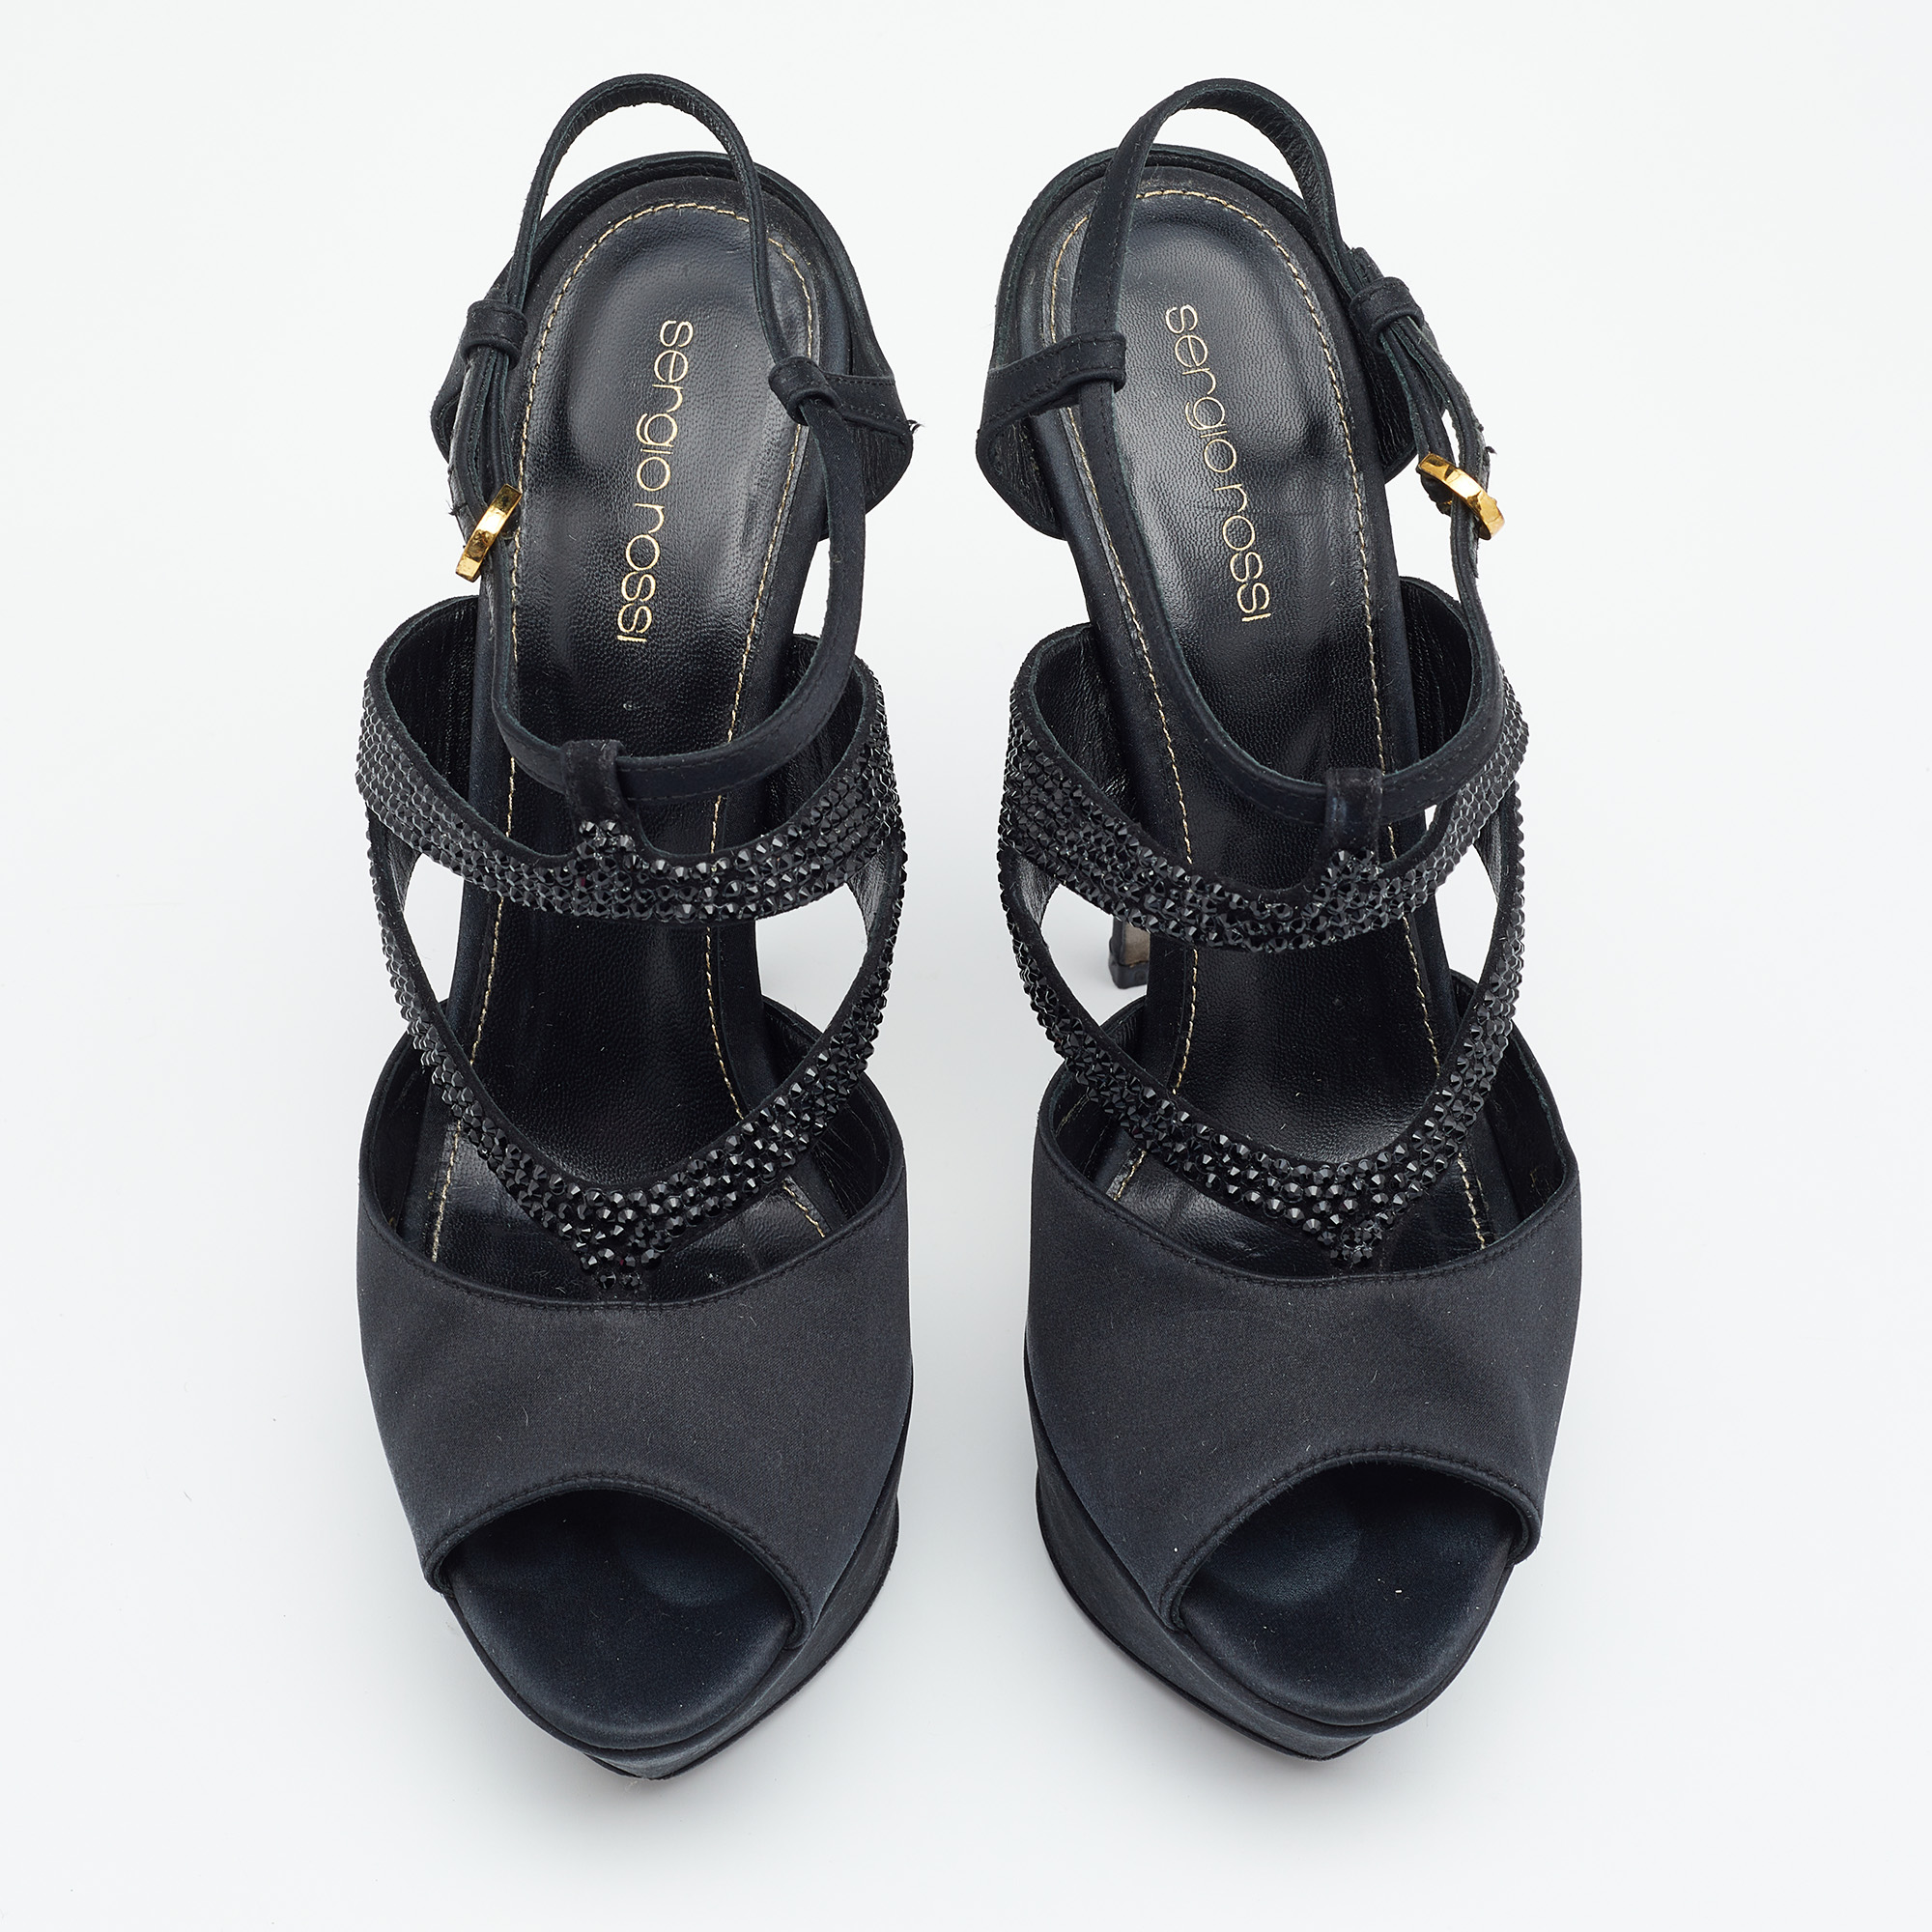 Sergio Rossi Black Satin Embellished  Ankle Strap Sandals Size 39